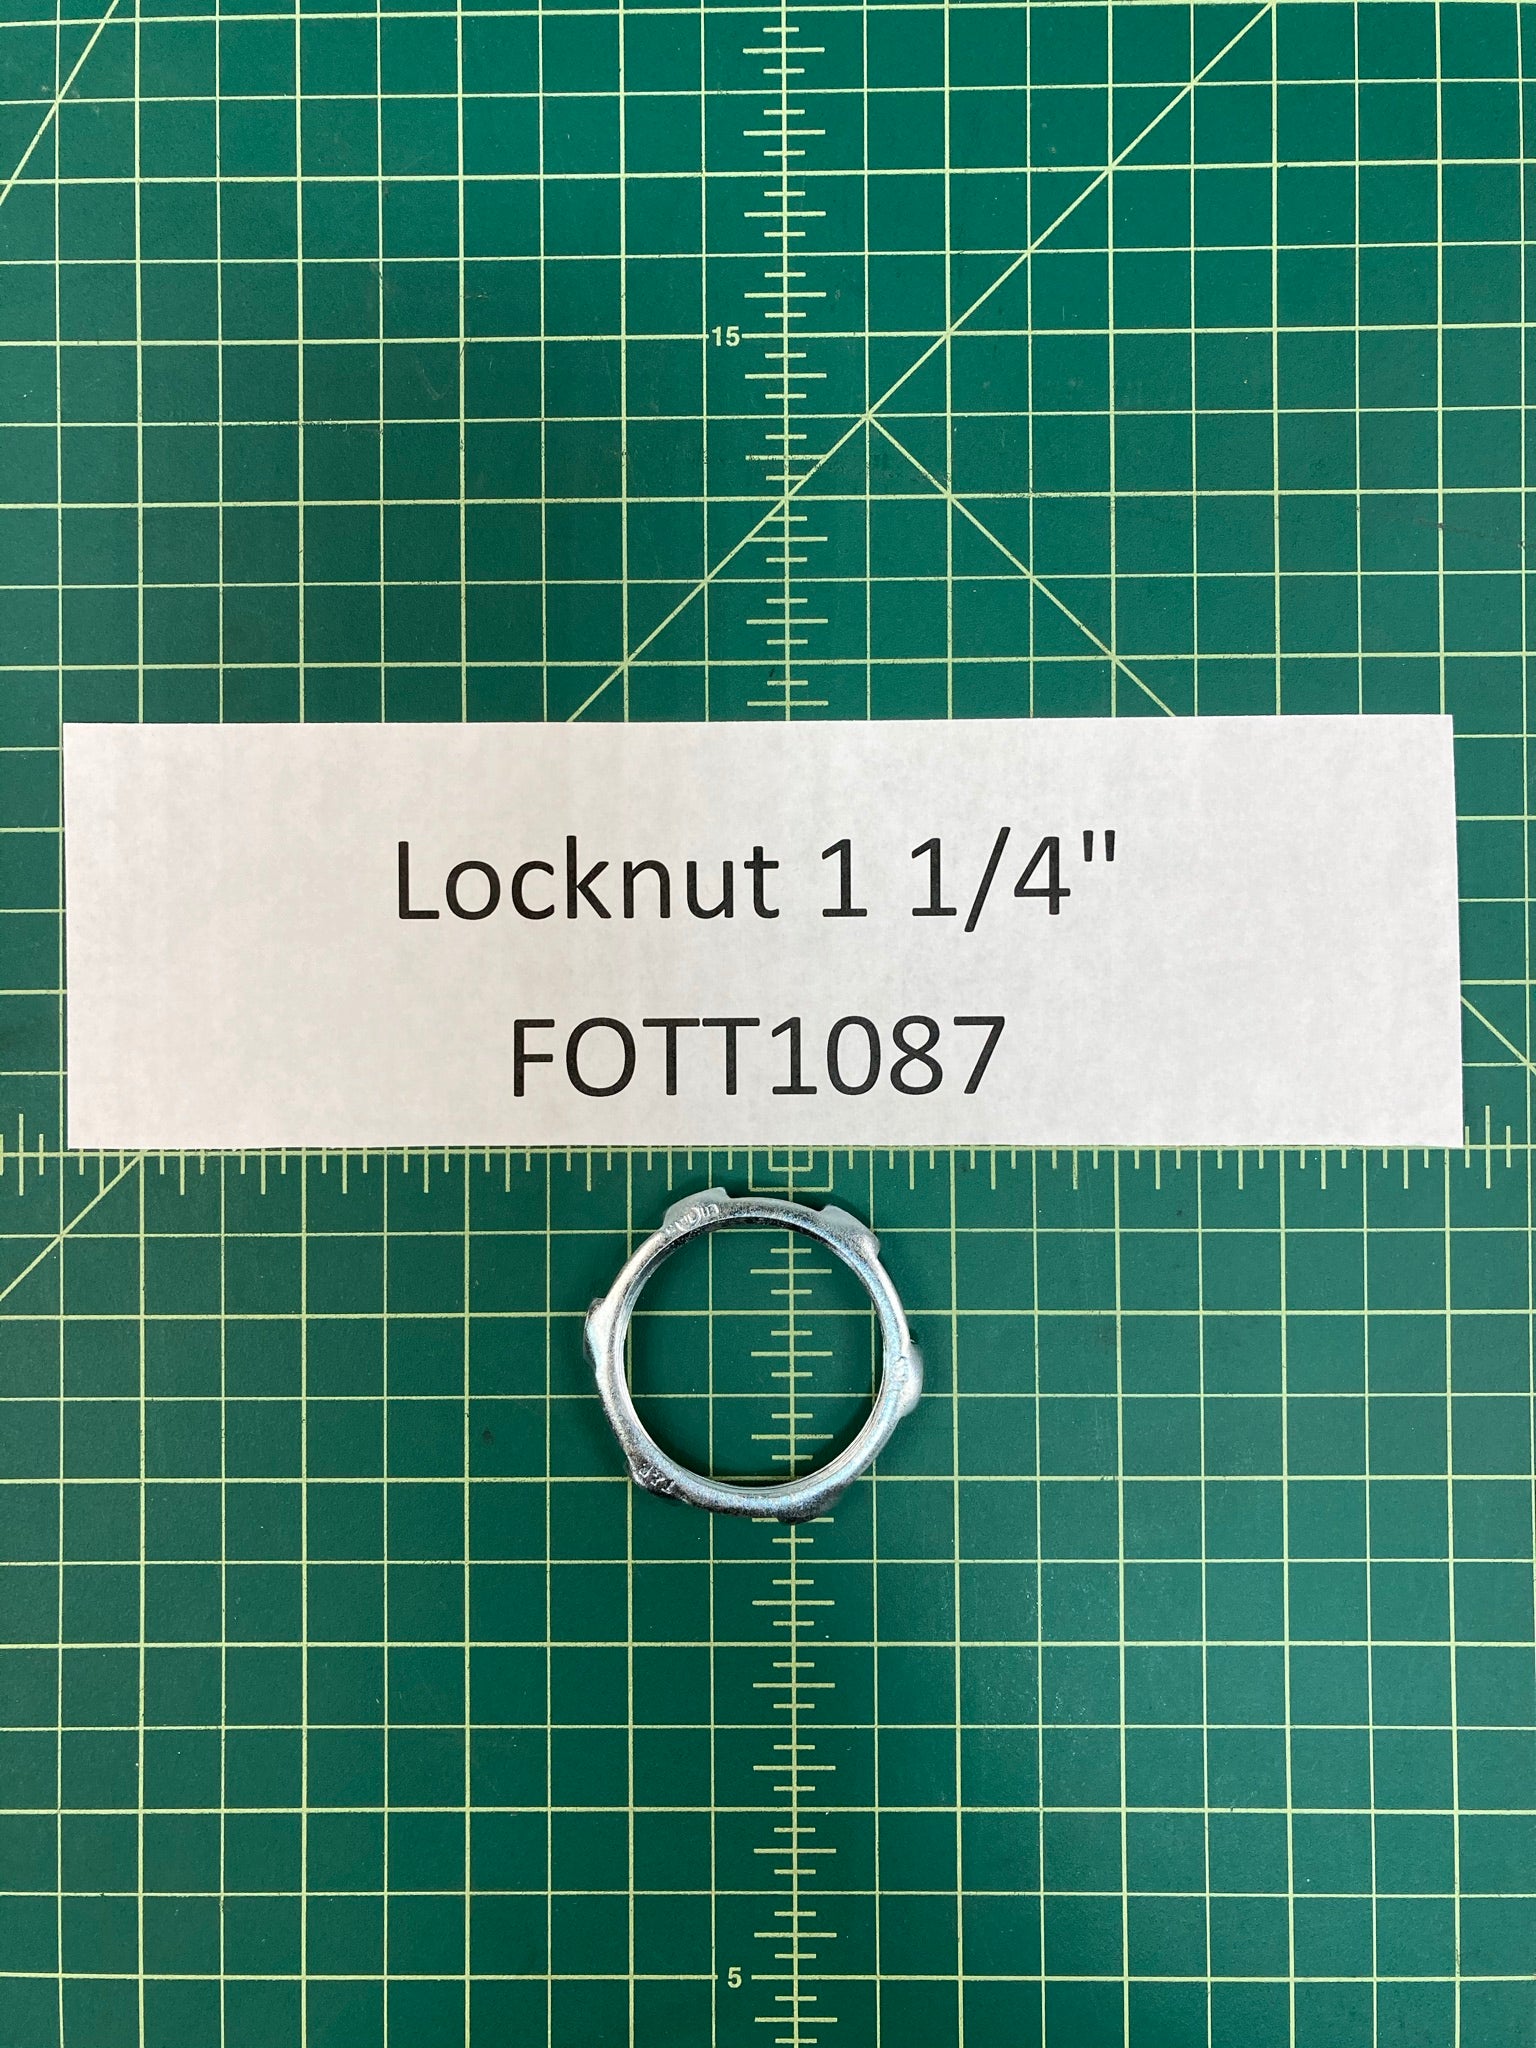 Locknut 1 1/4"